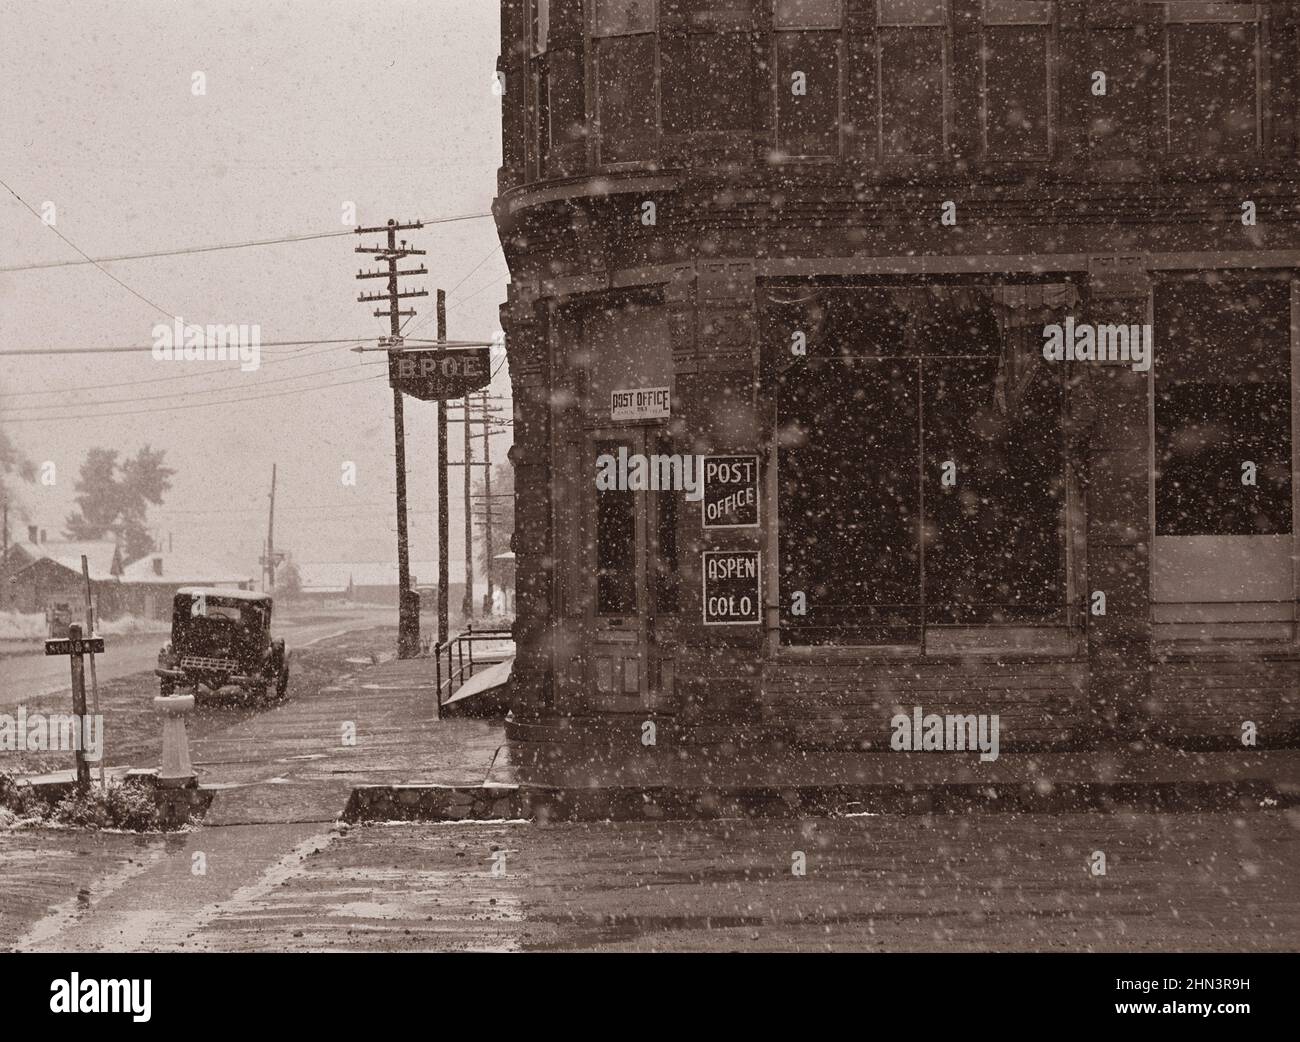 Foto d'epoca della vita americana nel 1940s. Ufficio postale in Blizzard. Aspen, Colorado. Di Marion Post Wolcott (fotografo). Settembre 1941 Foto Stock